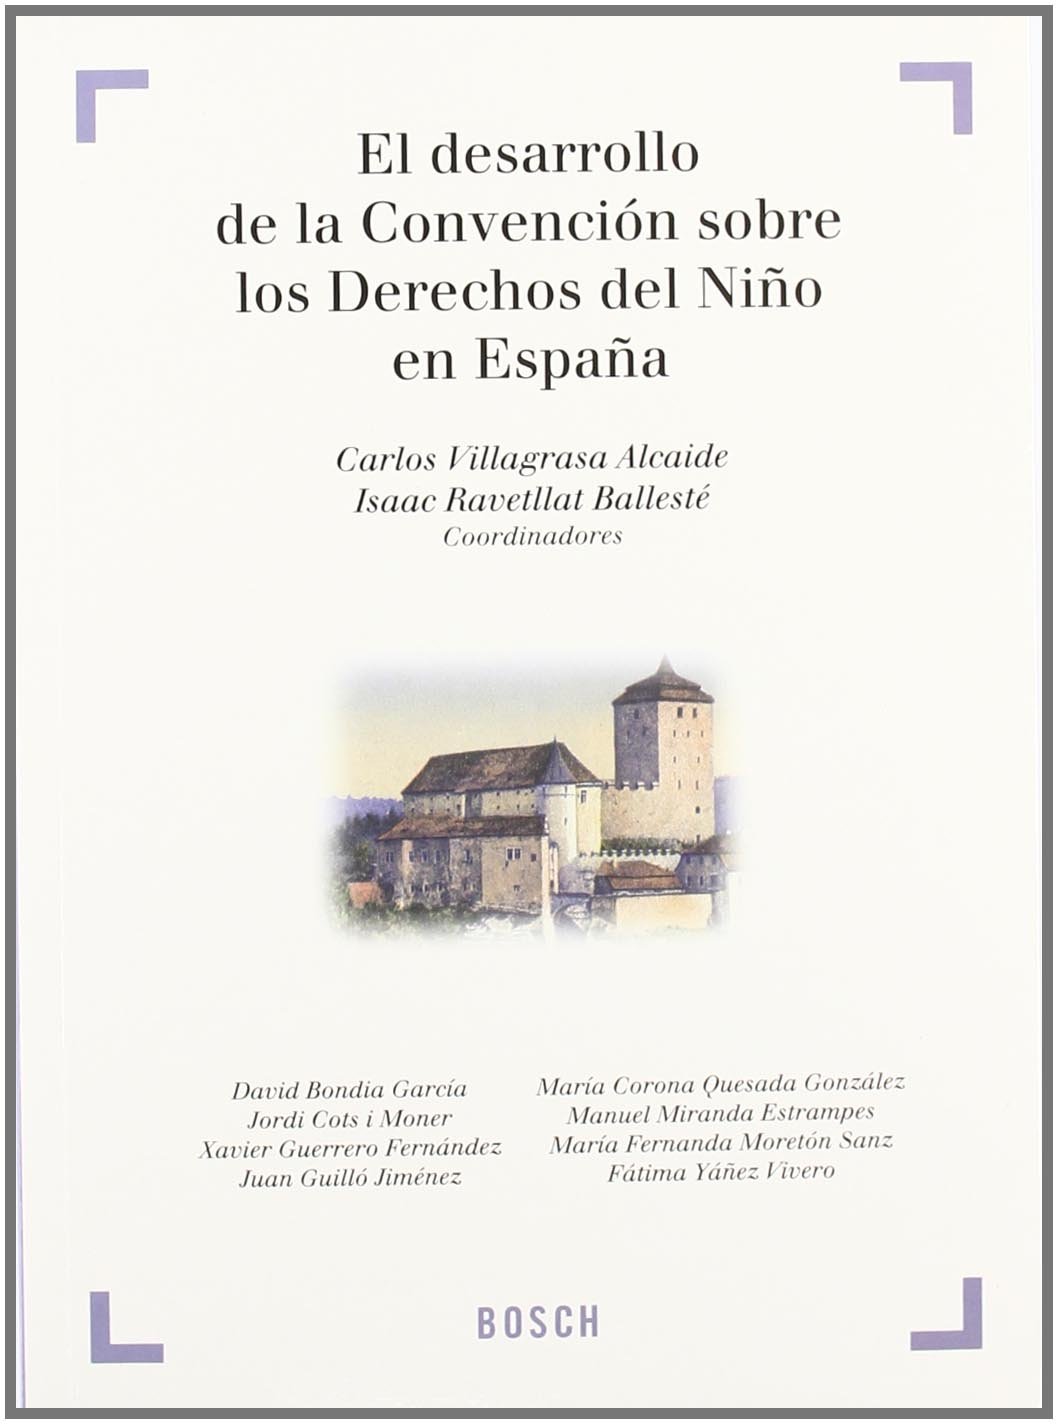 El desarrollo de la Convención sobre los Derechos del Niño en España